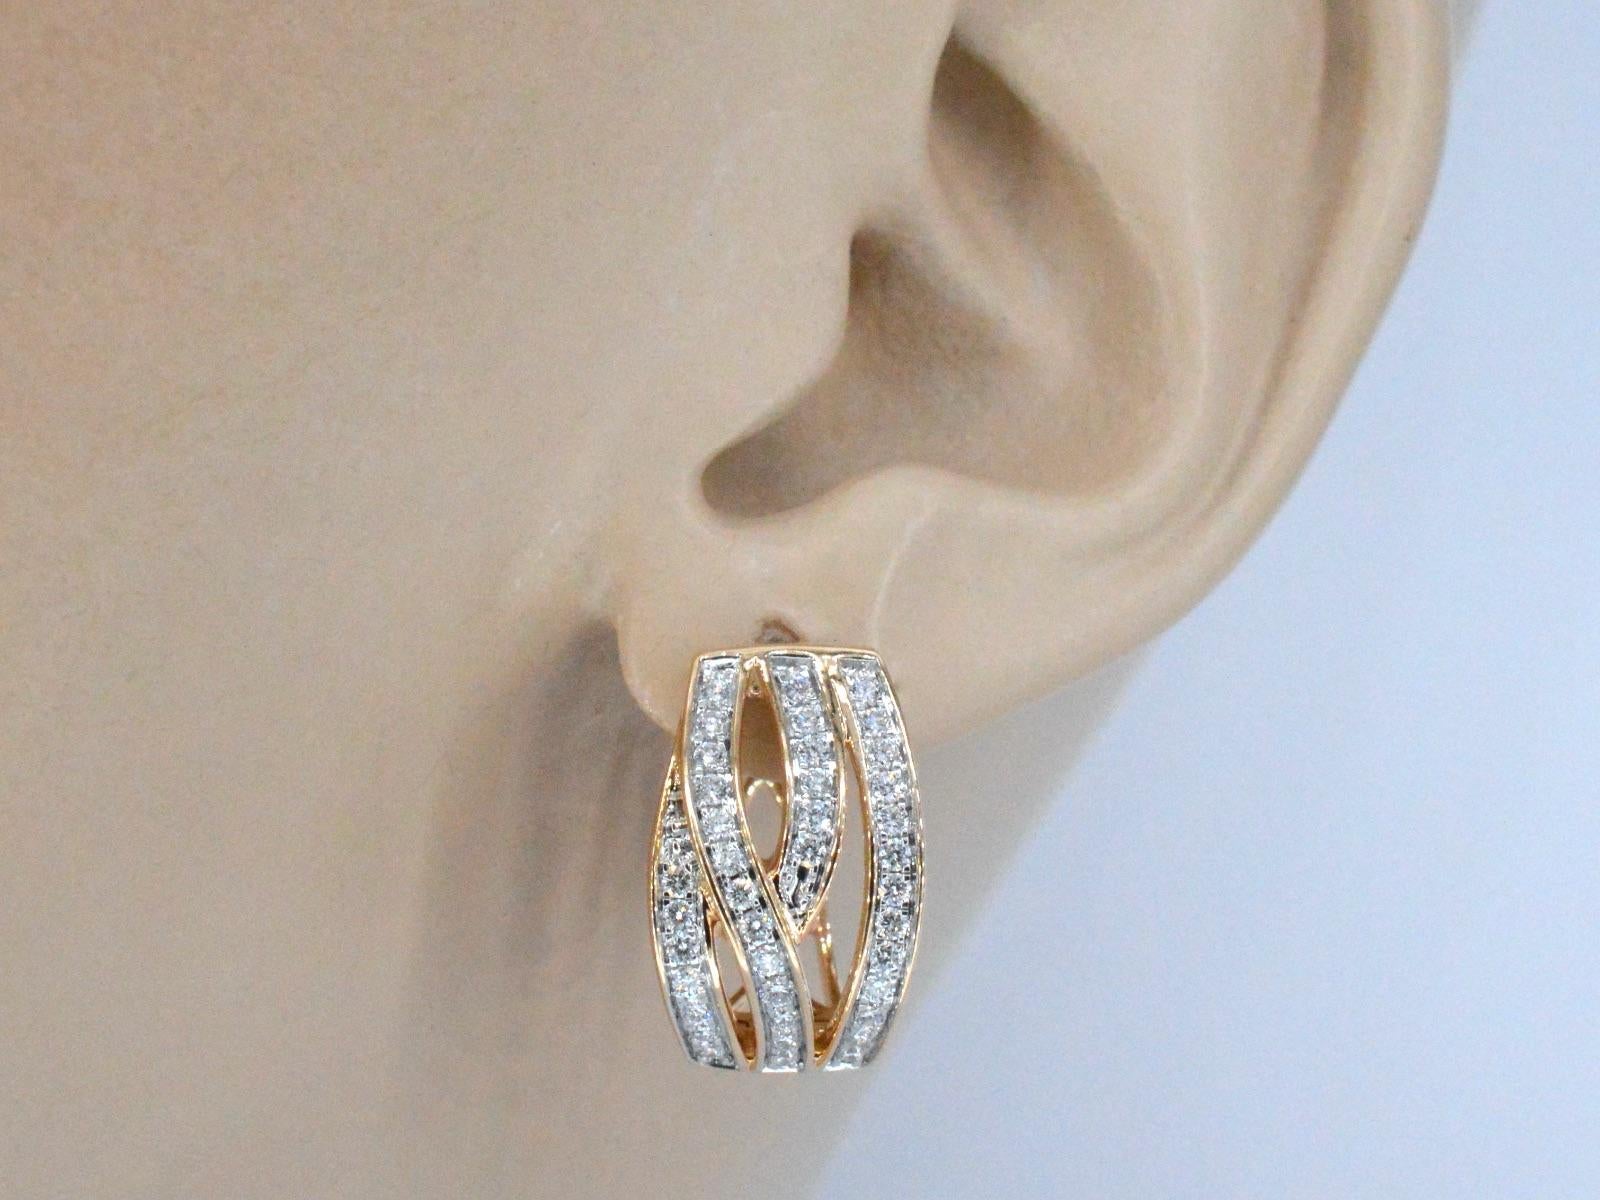 Diese Ohrringe aus Roségold sind ein atemberaubendes Schmuckstück mit Diamanten im Brillantschliff in einem einzigartigen und stilvollen Design. Die Diamanten sind fachmännisch in das Roségold gefasst, so dass ein nahtloser und eleganter Look